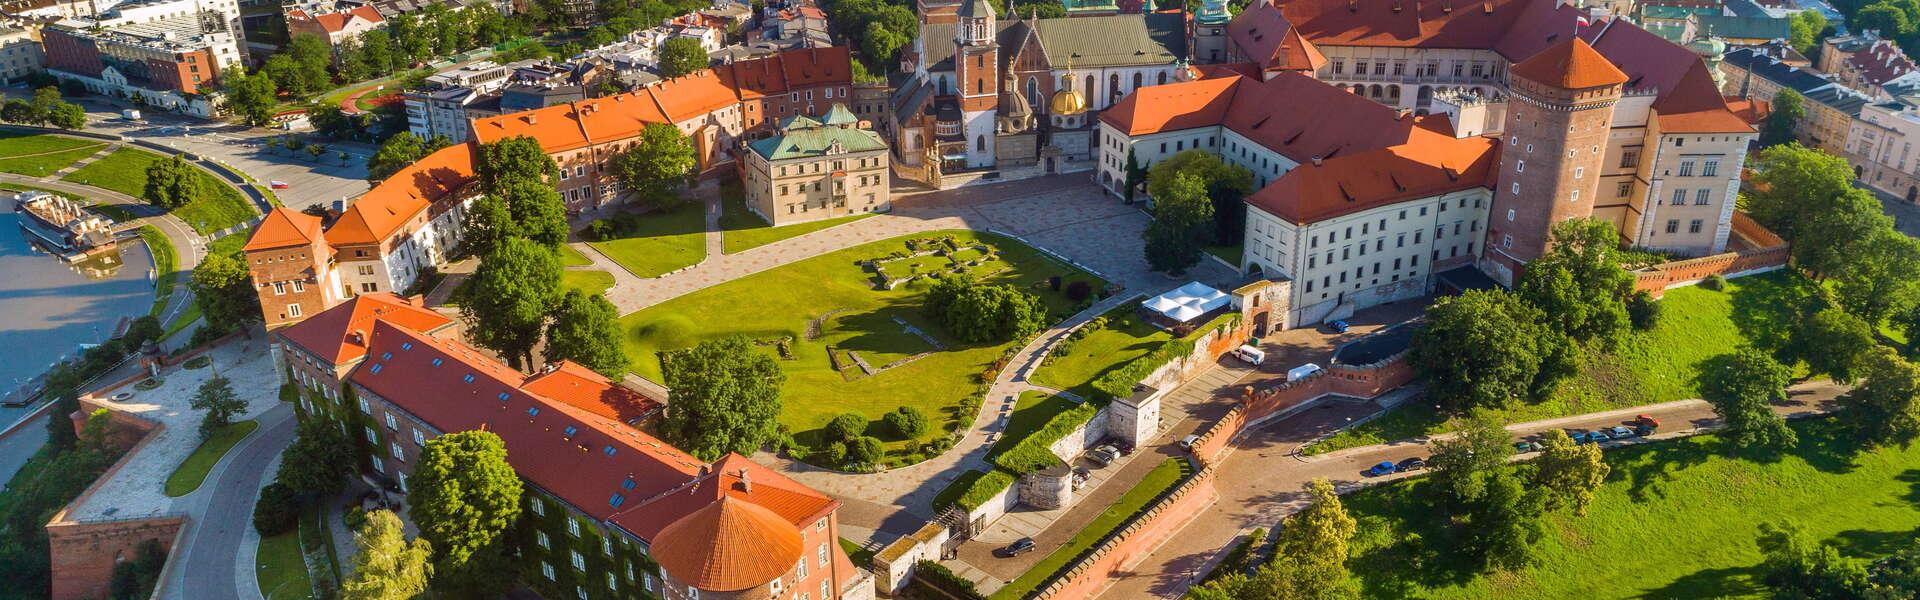 Das Königsschloss Wawel aus der Vogelperspektive. Der Innenhof des Schlosses ist mit Gras bewachsen und von Sträuchern umgeben. Gebäude im Hintergrund.